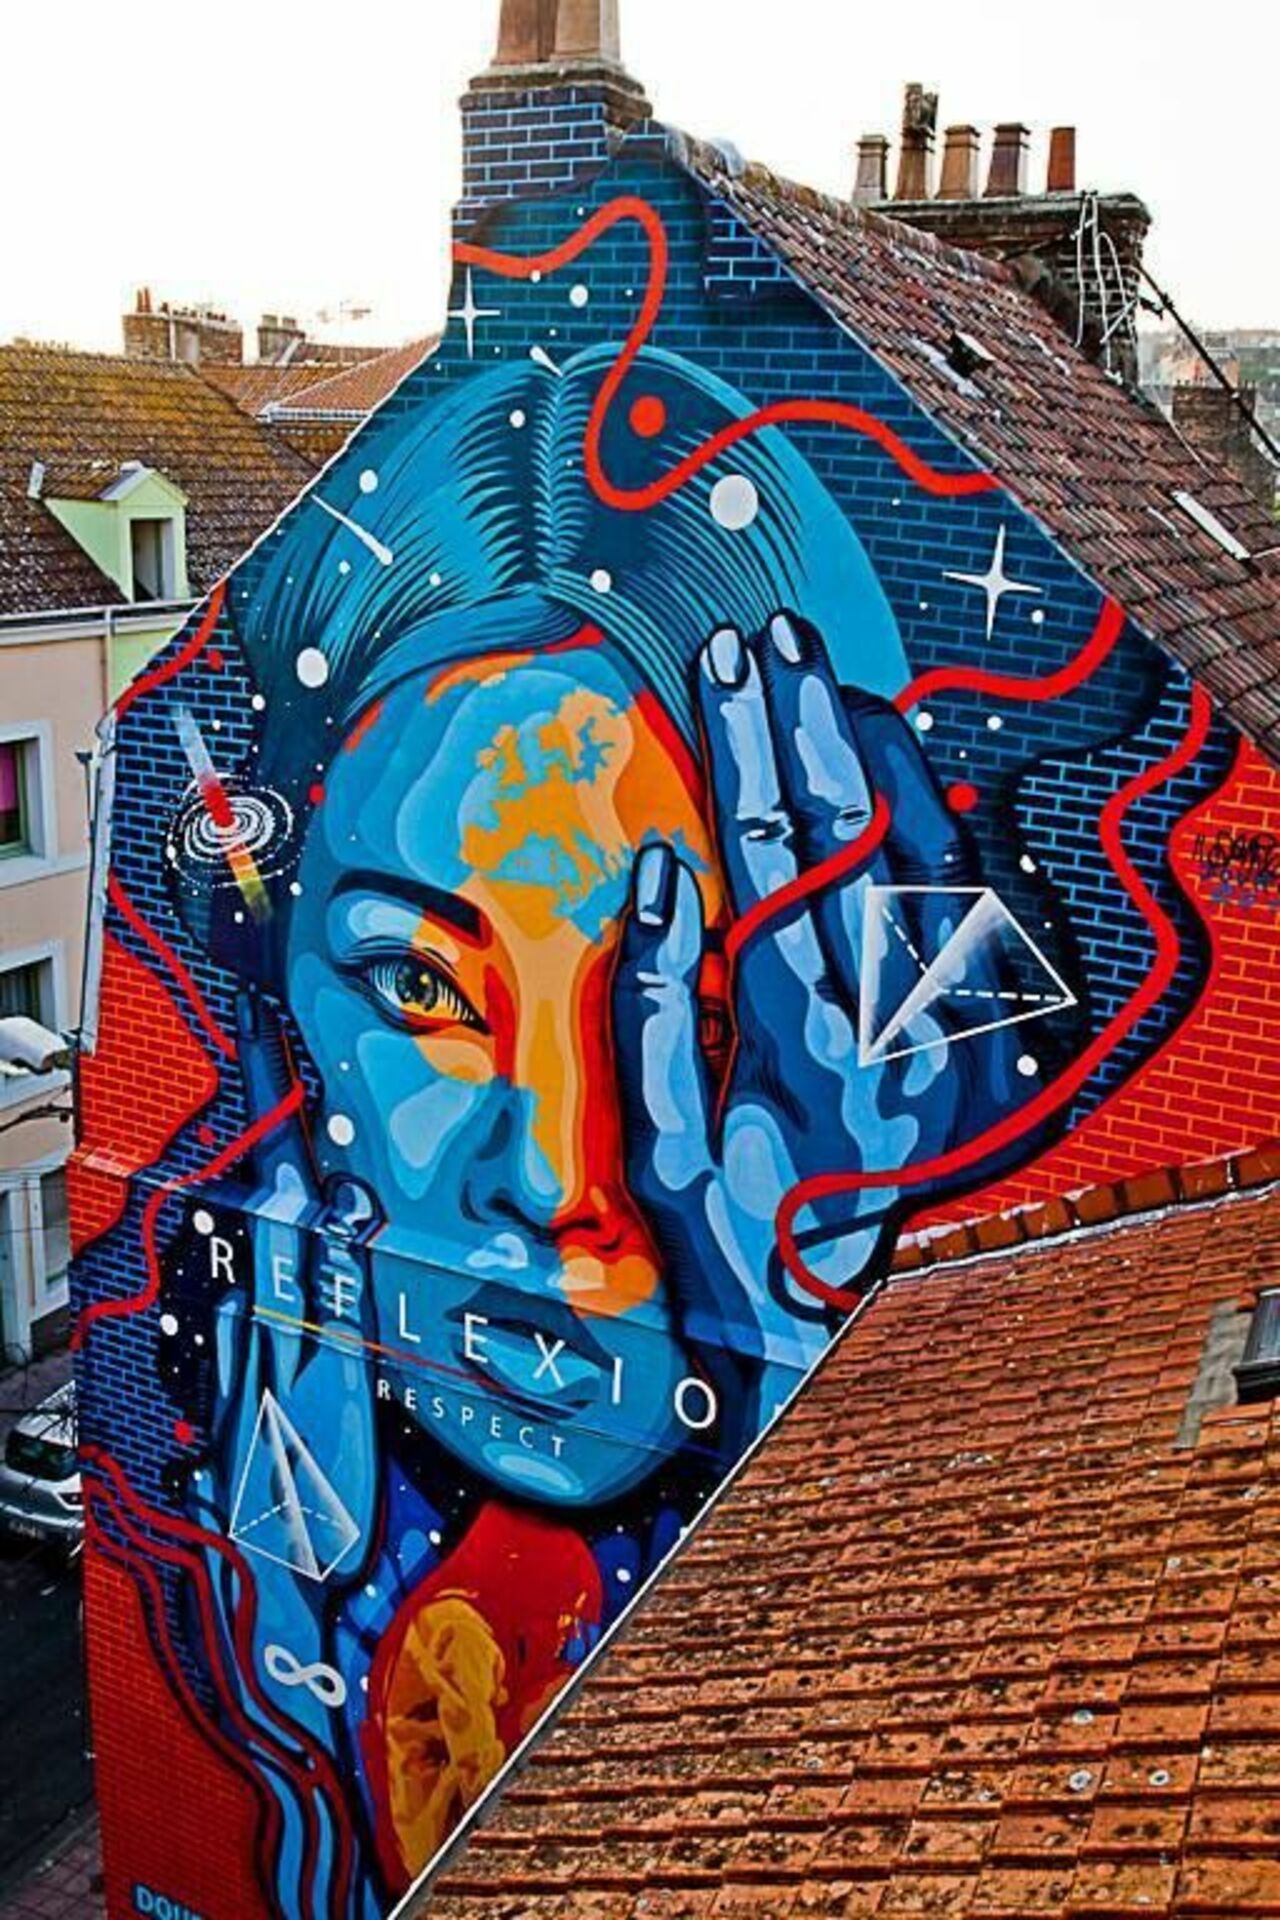 DOURONE .. 'REFLEXION / RESPECT'#streetart #mural #graffiti #art https://t.co/DqyEsL4ry8